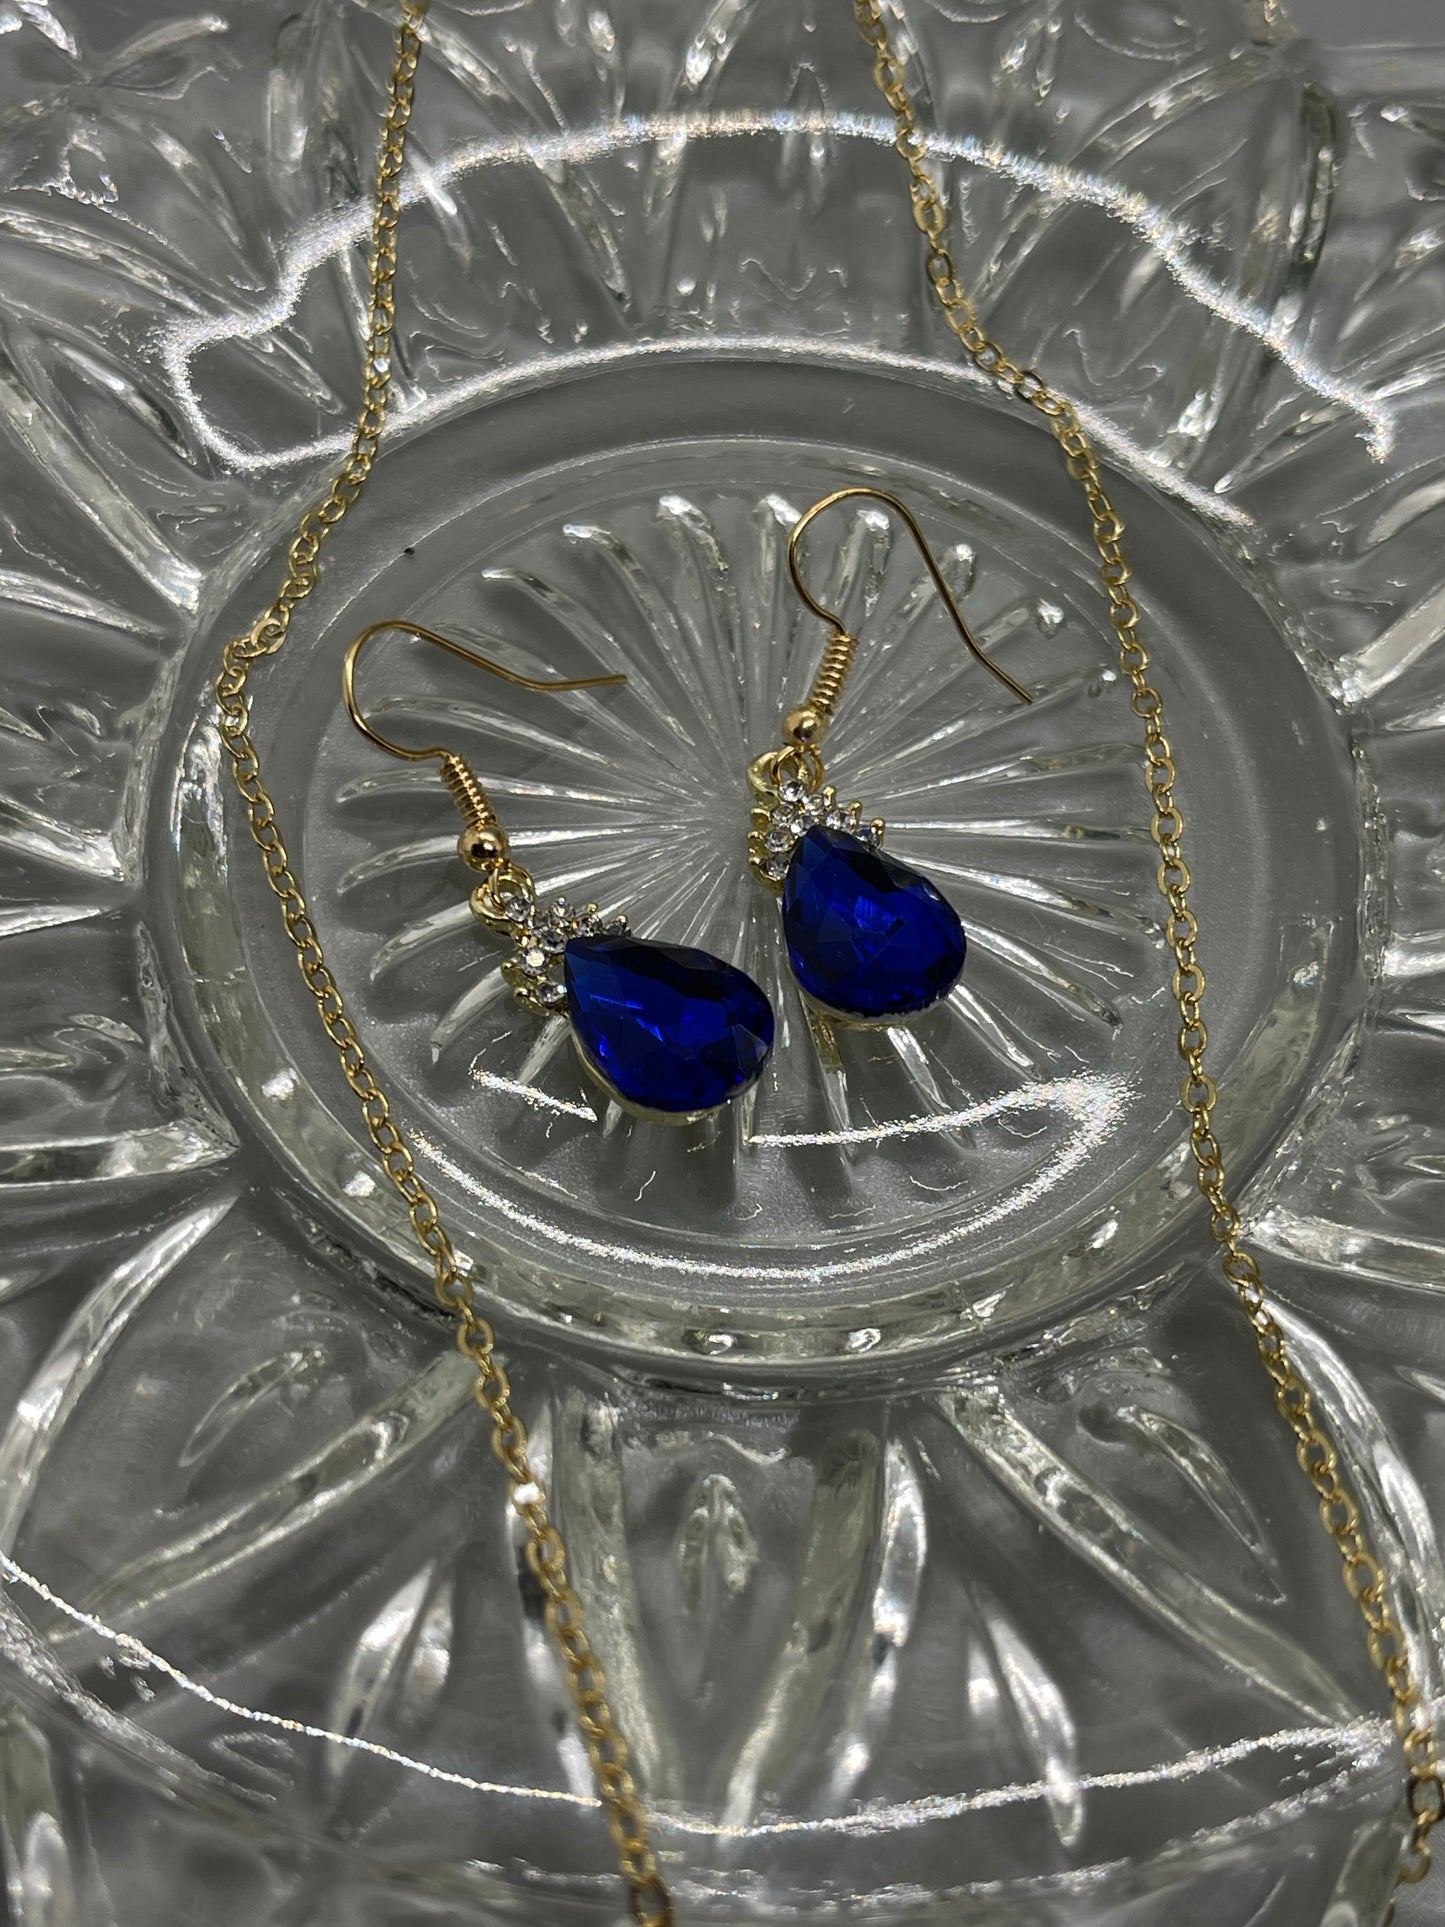 Blue sapphire crystal teardrop gold necklace earrings set